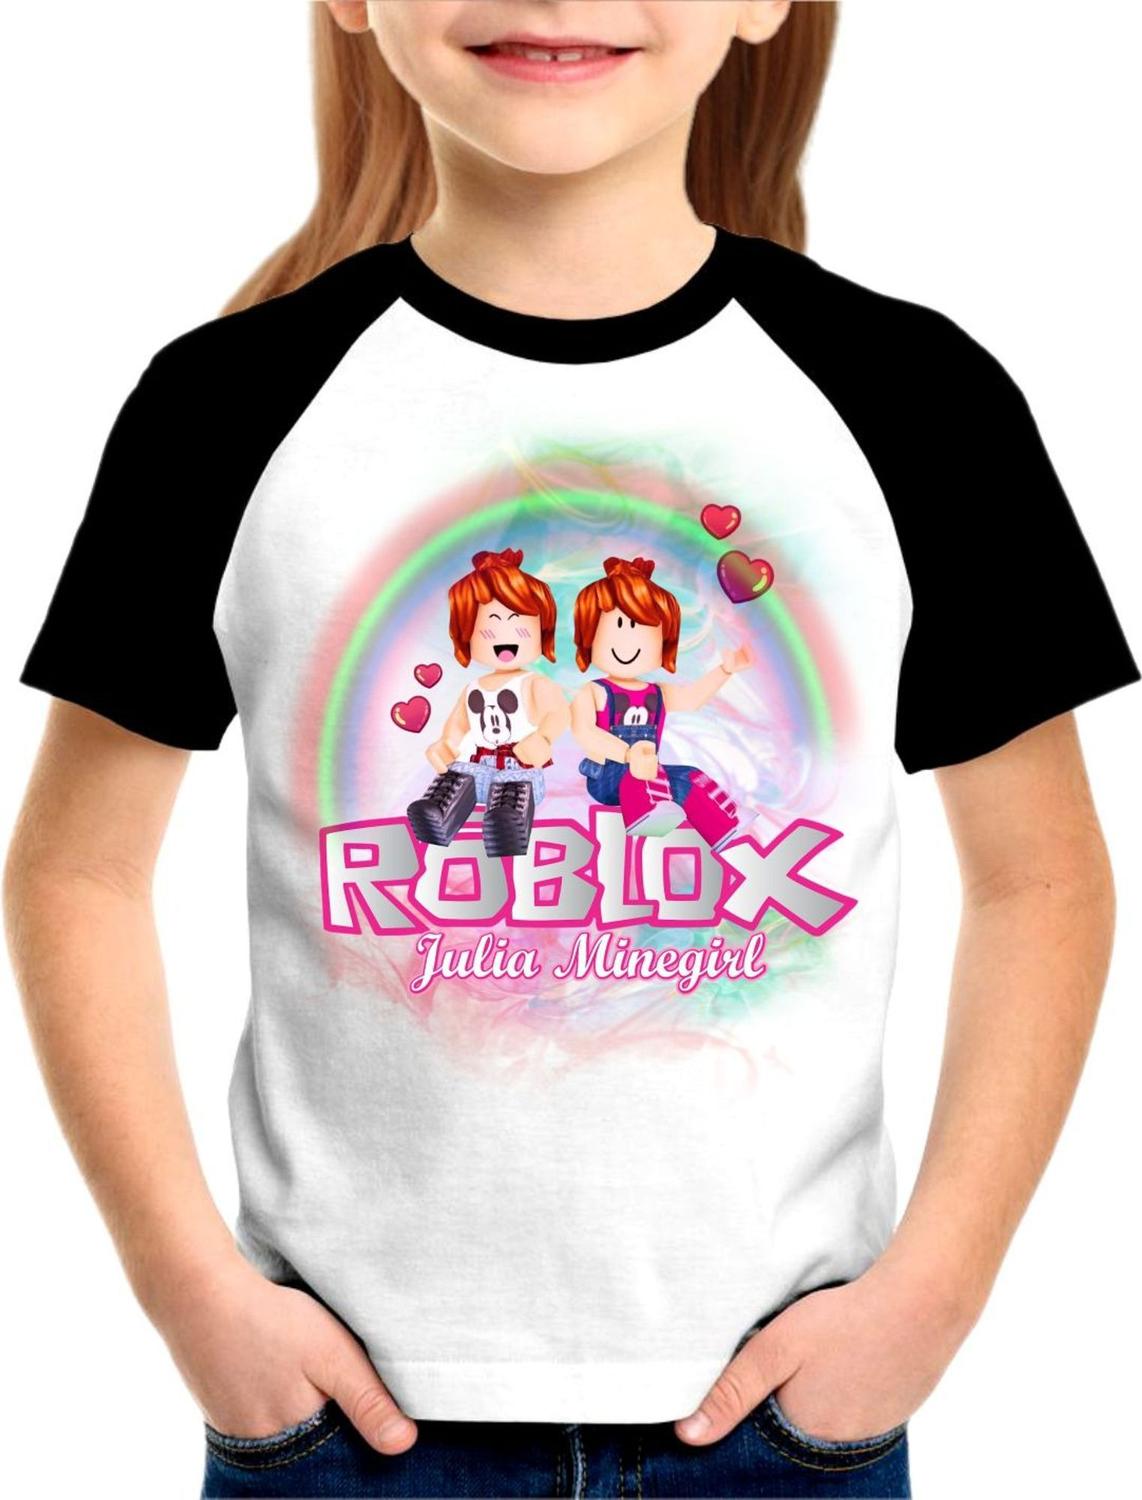 Camiseta blusa preta infantil menina roblox julia minegirl - Camiseta